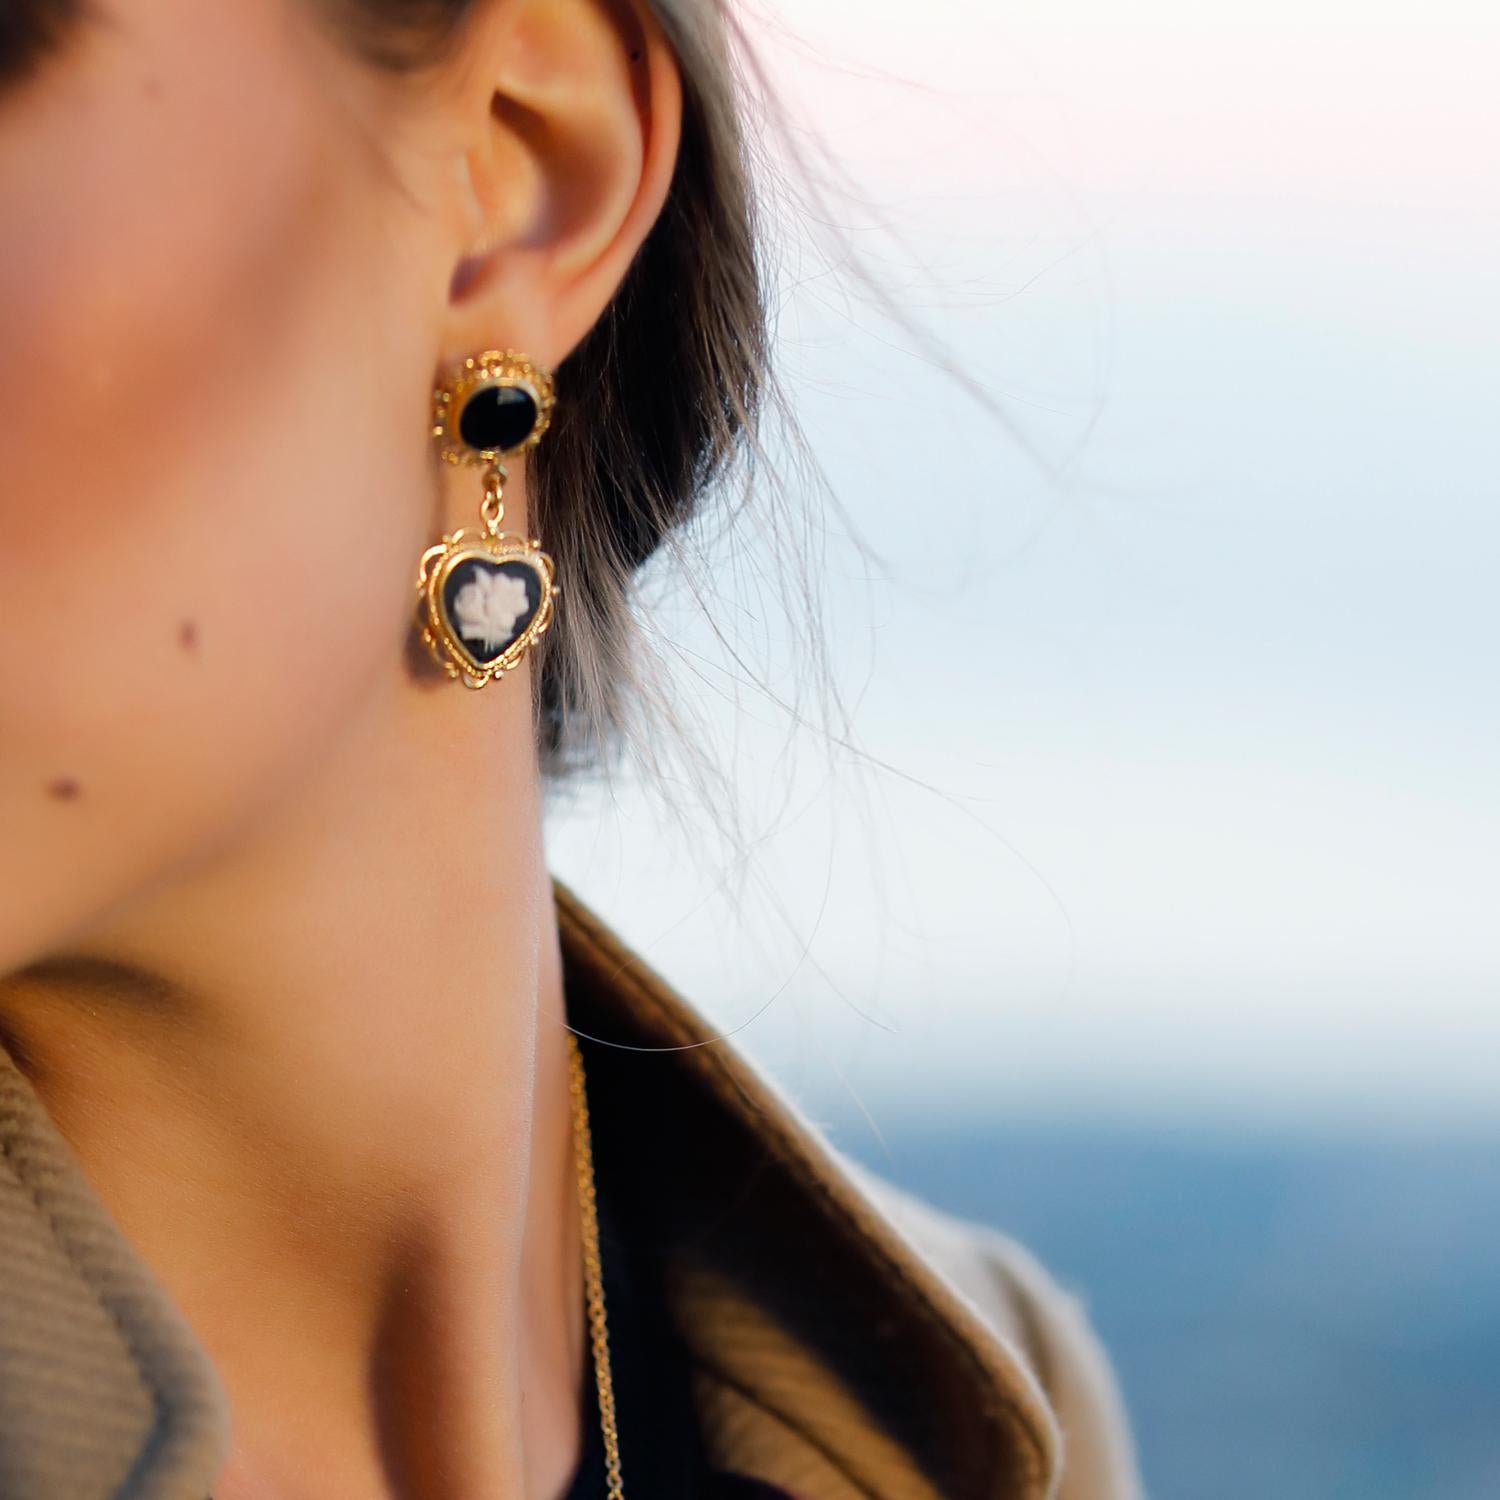 Die Cameo-Ohrringe 'Bouquet' von Vintouch sind von der antiken Goldschmiedetechnik 'Filigrana' inspiriert, bei der dünne Edelmetalldrähte zu einer durchbrochenen Struktur um den Edelstein gebunden werden. Diese Ohrringe symbolisieren Freude und